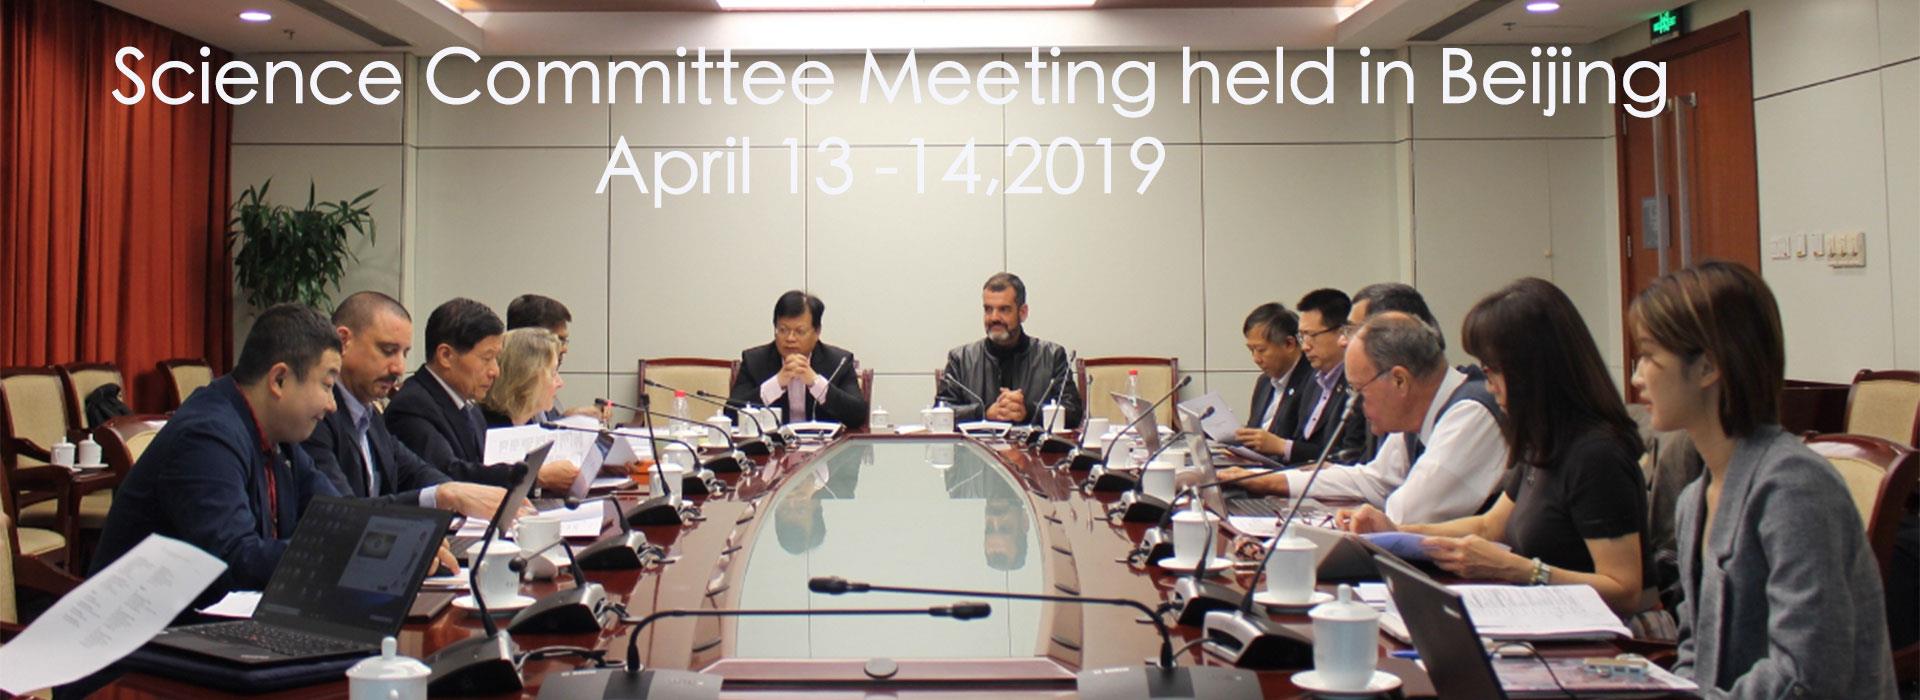 Science Committee Meeting Held in Beijing, April 13 -14